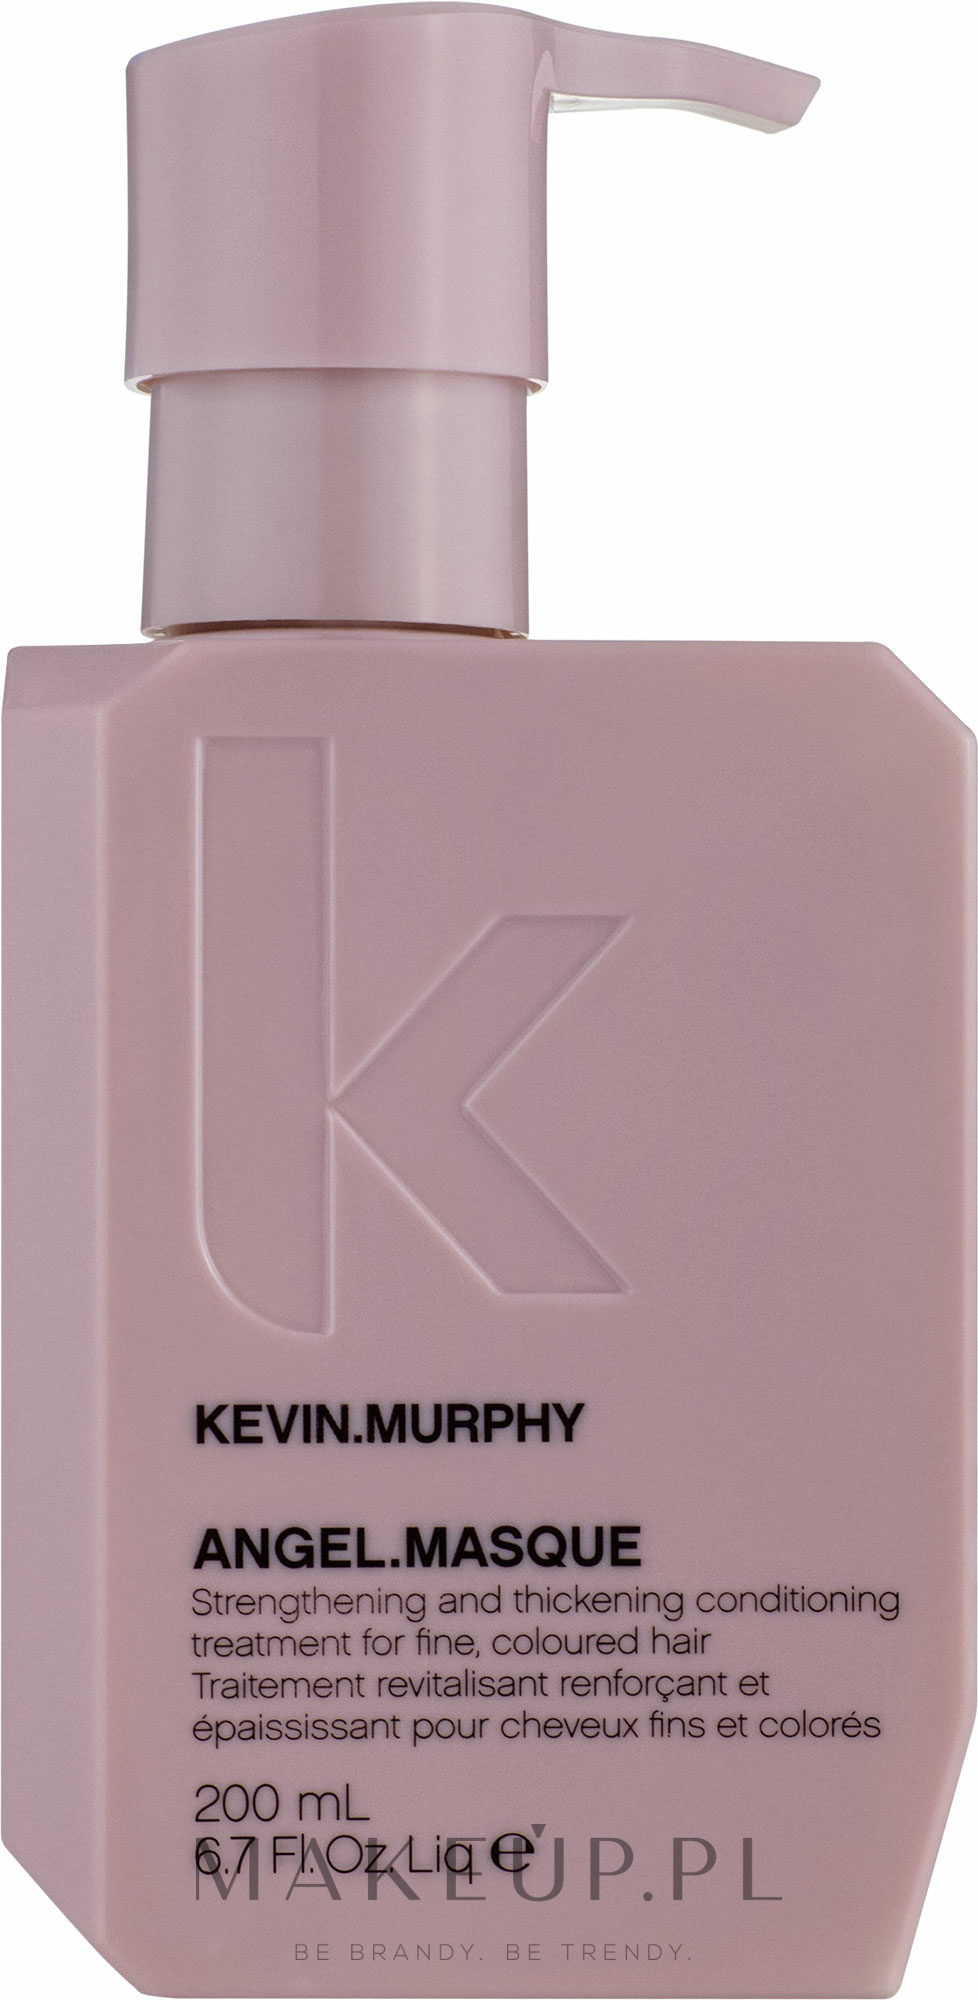 Wzmacniająco-pogrubiająca odżywka do włosów cienkich i farbowanych - Kevin.Murphy Angel.Masque — Zdjęcie 200 ml